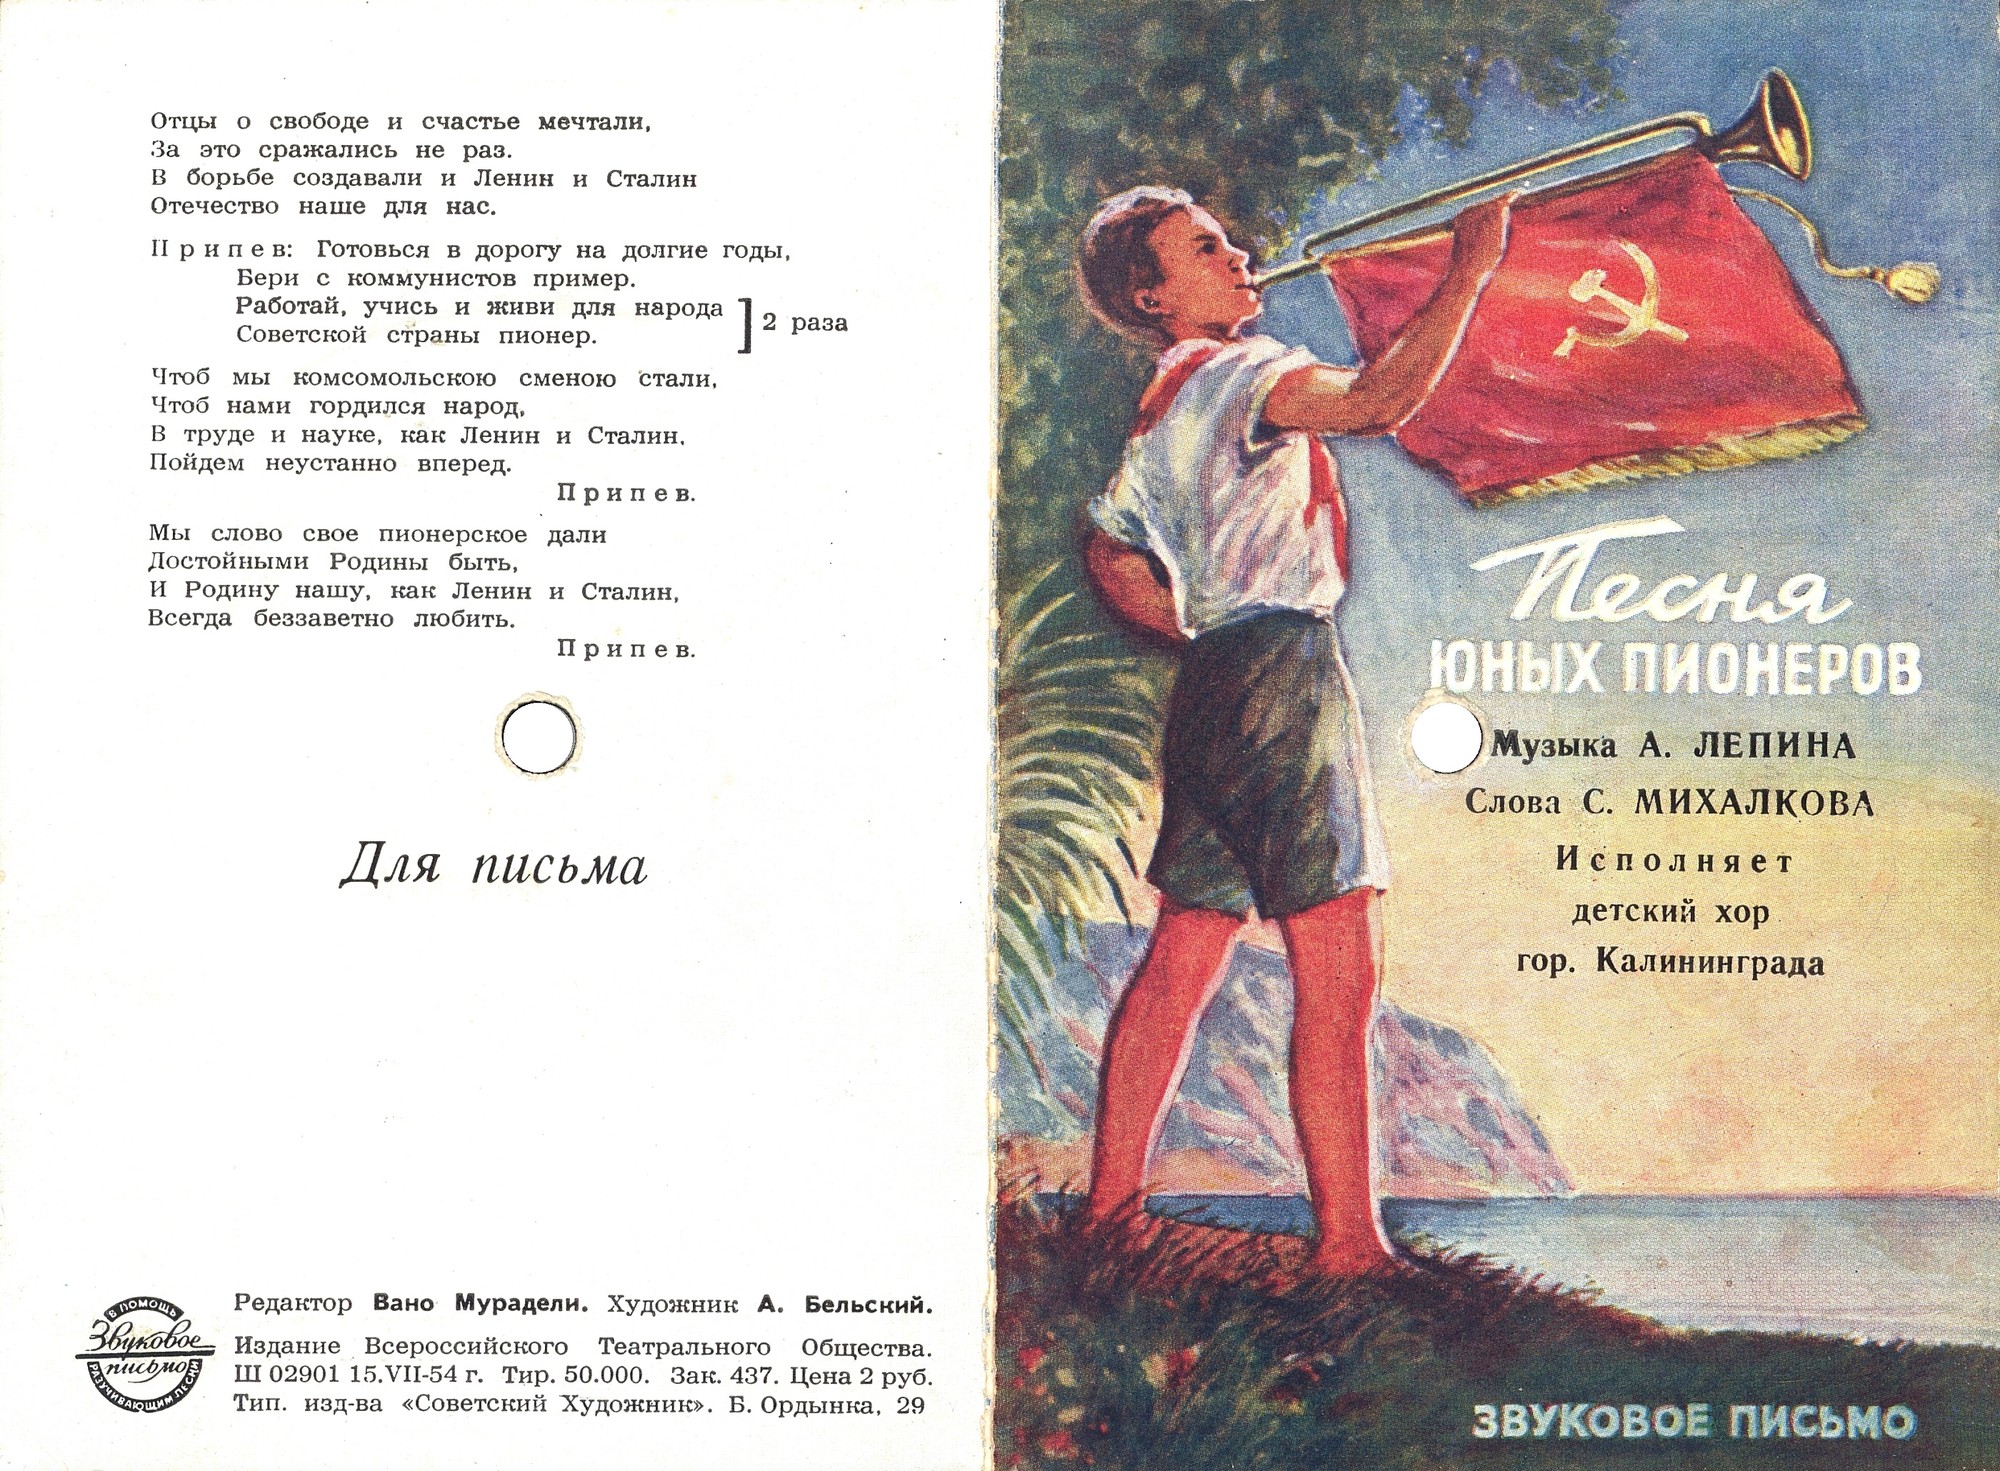 Детский хор г. Калининграда — Песня юных пионеров